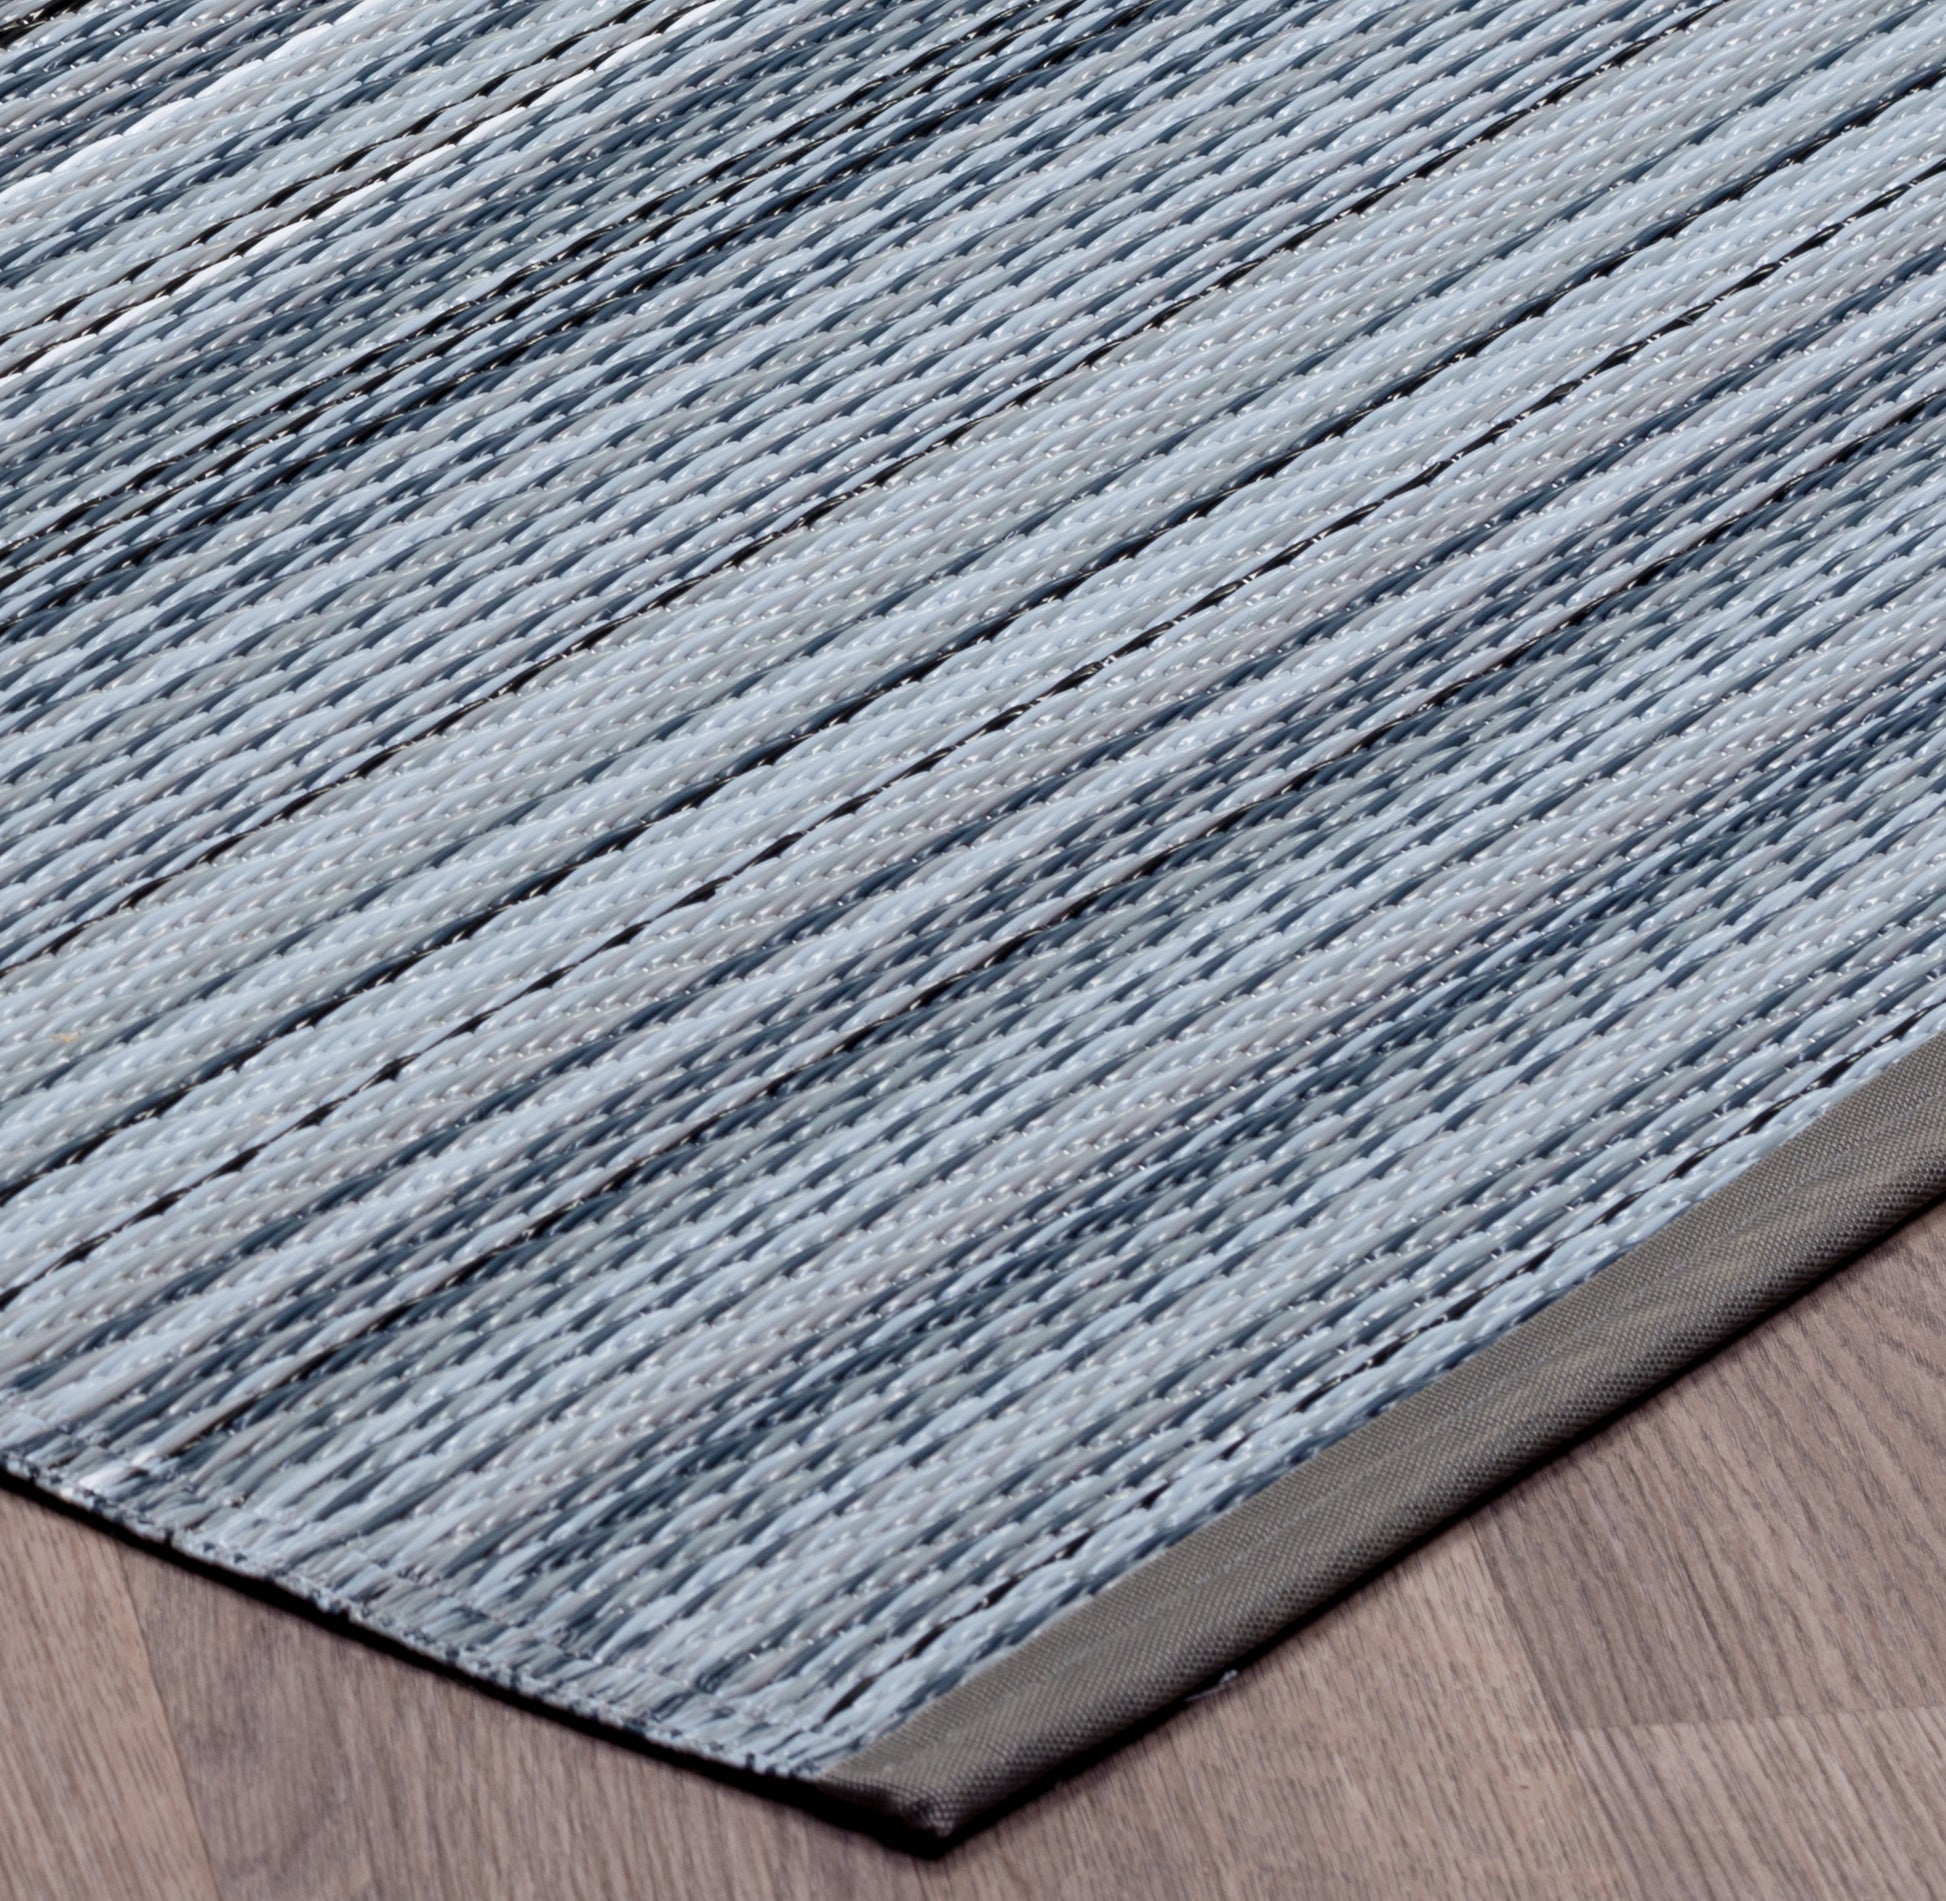 Indoor/Outdoor Grey Stripes Reversible RugIndoor/Outdoor Grey Stripes Reversible Rug Outdoor Area Rug, Outdoor carpet, outdoor mat, picnic mat